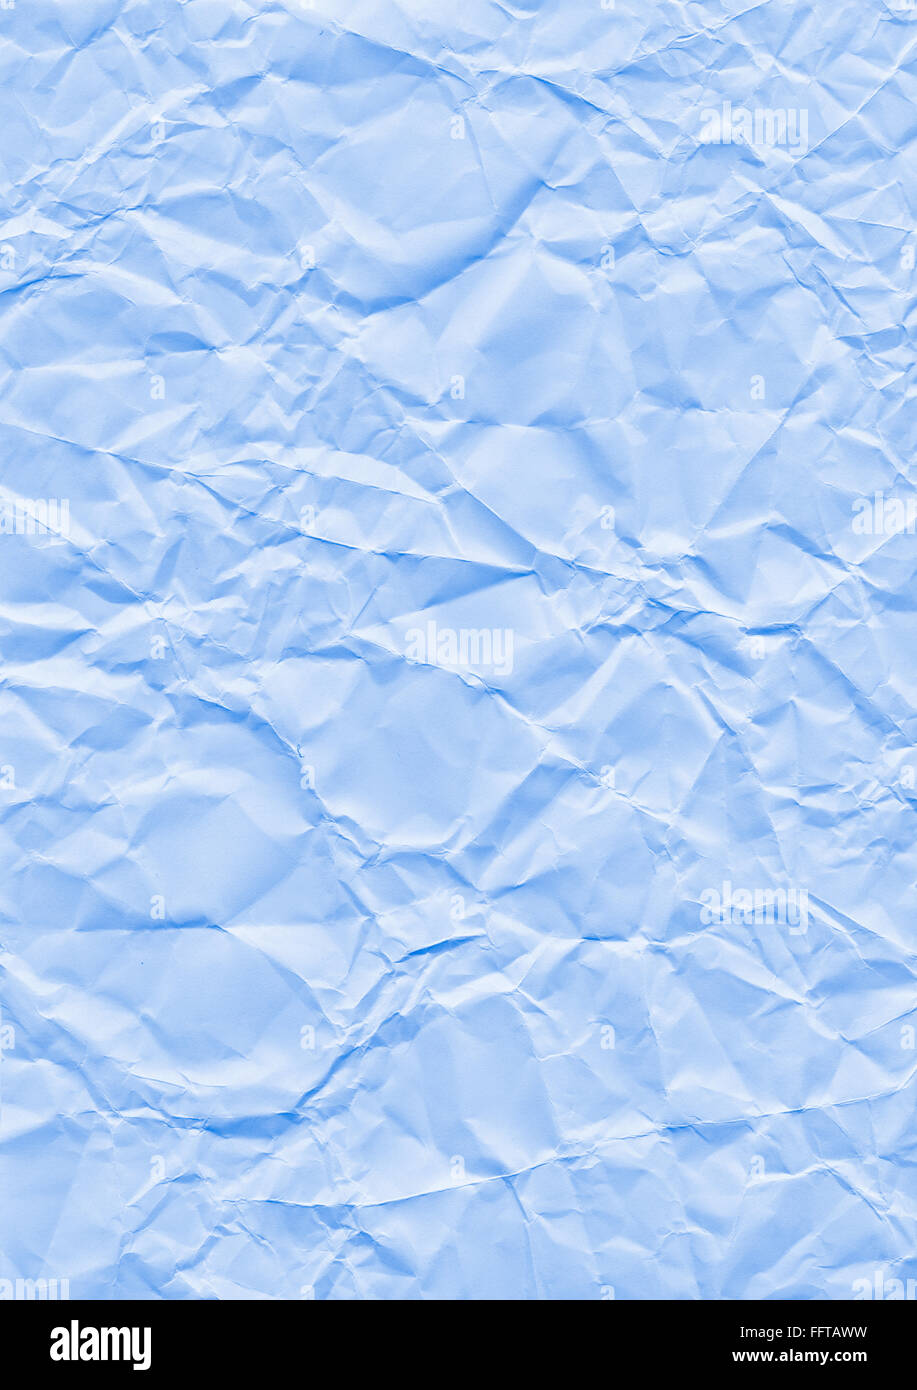 Knitter Hintergrund blau Papier geknickt Knicke knicken zerknittert Knautsch zerknautscht kaputt gefaltet falten faltig Textur S Foto Stock